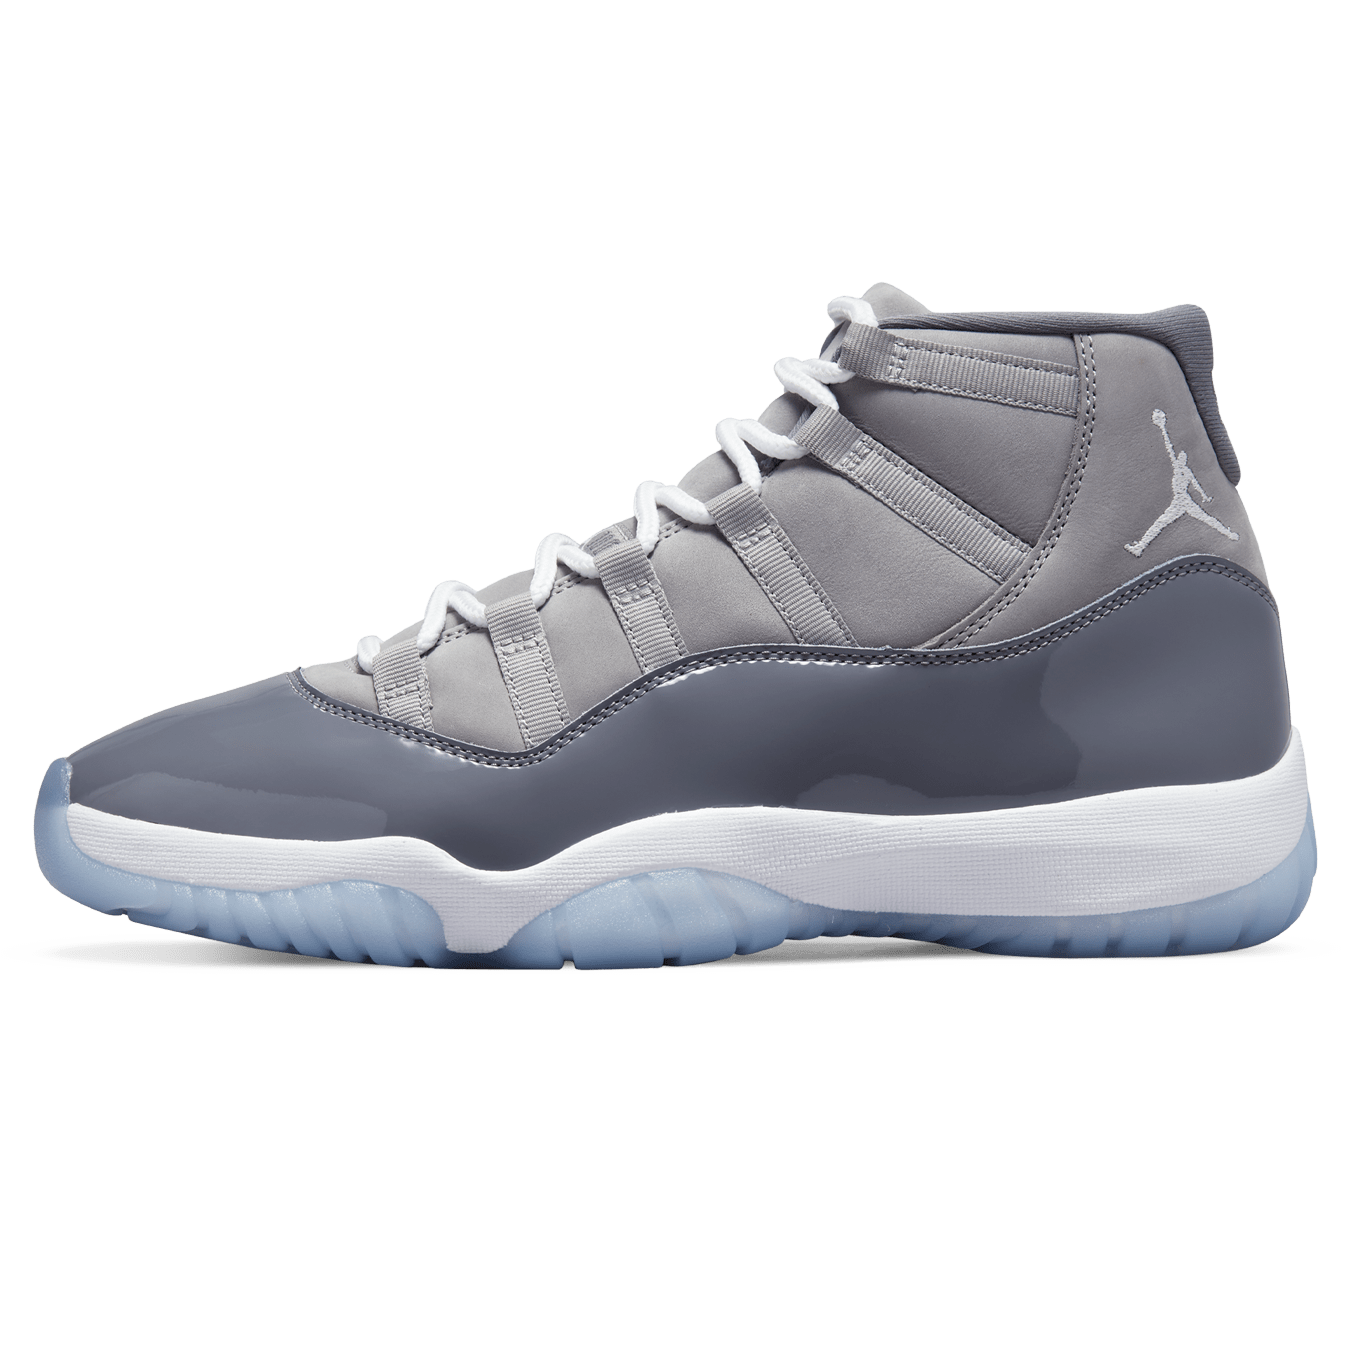 Air Jordan 11 Retro 'Cool Grey' 2021 CT8012 005 - Size 10